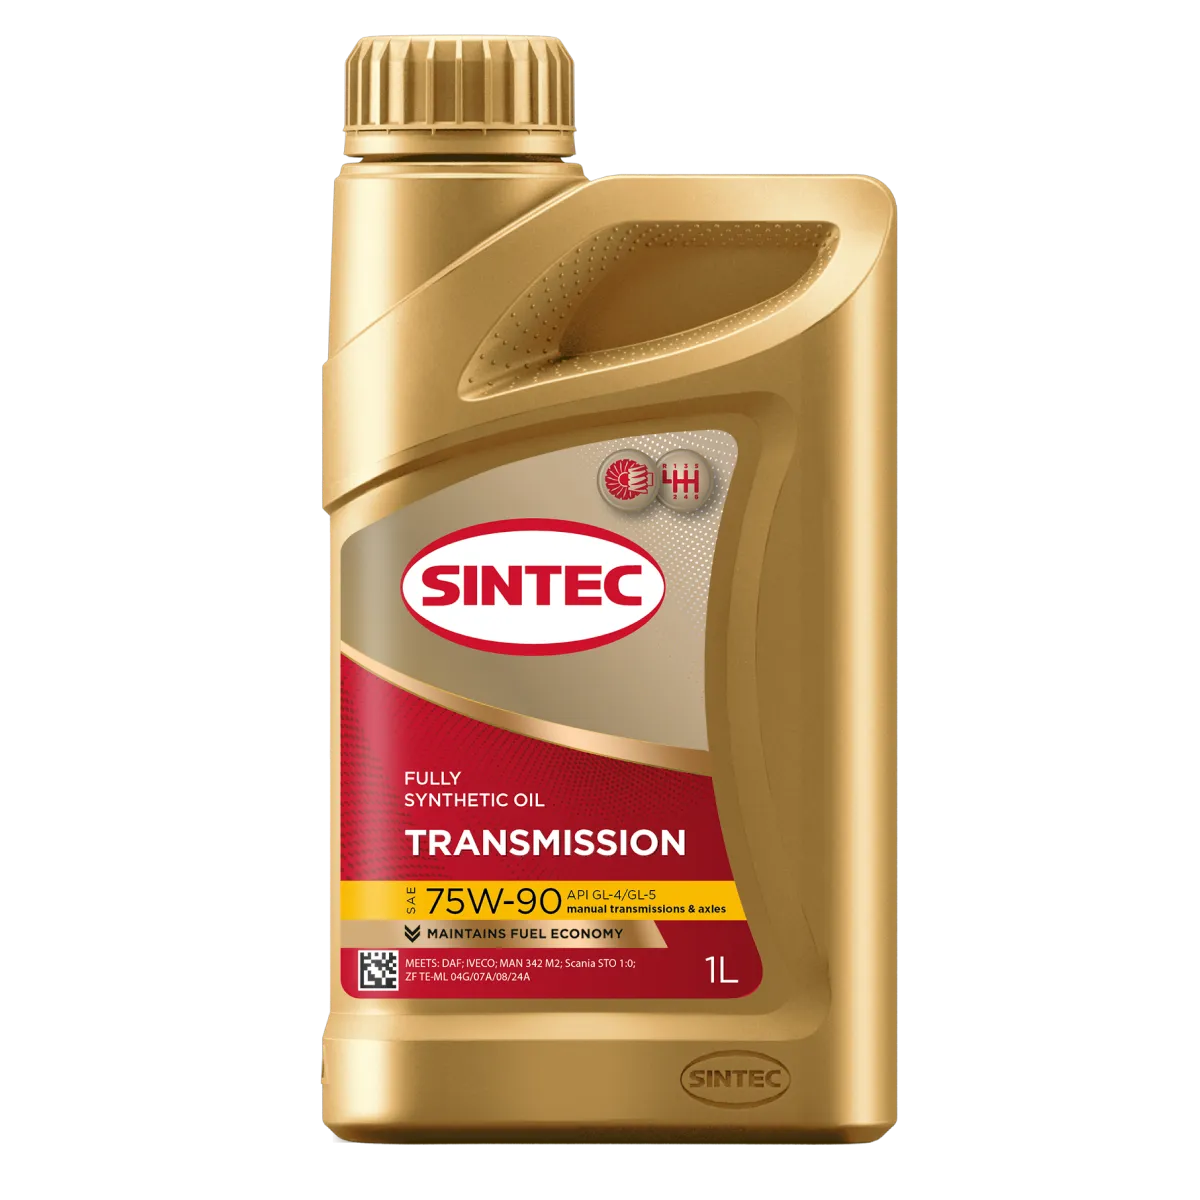 SINTEC TRANSMISSION SAE 75W-90 API GL-4/GL-5 Трансмиссионные масла: описание, применение, свойства, где
							купить